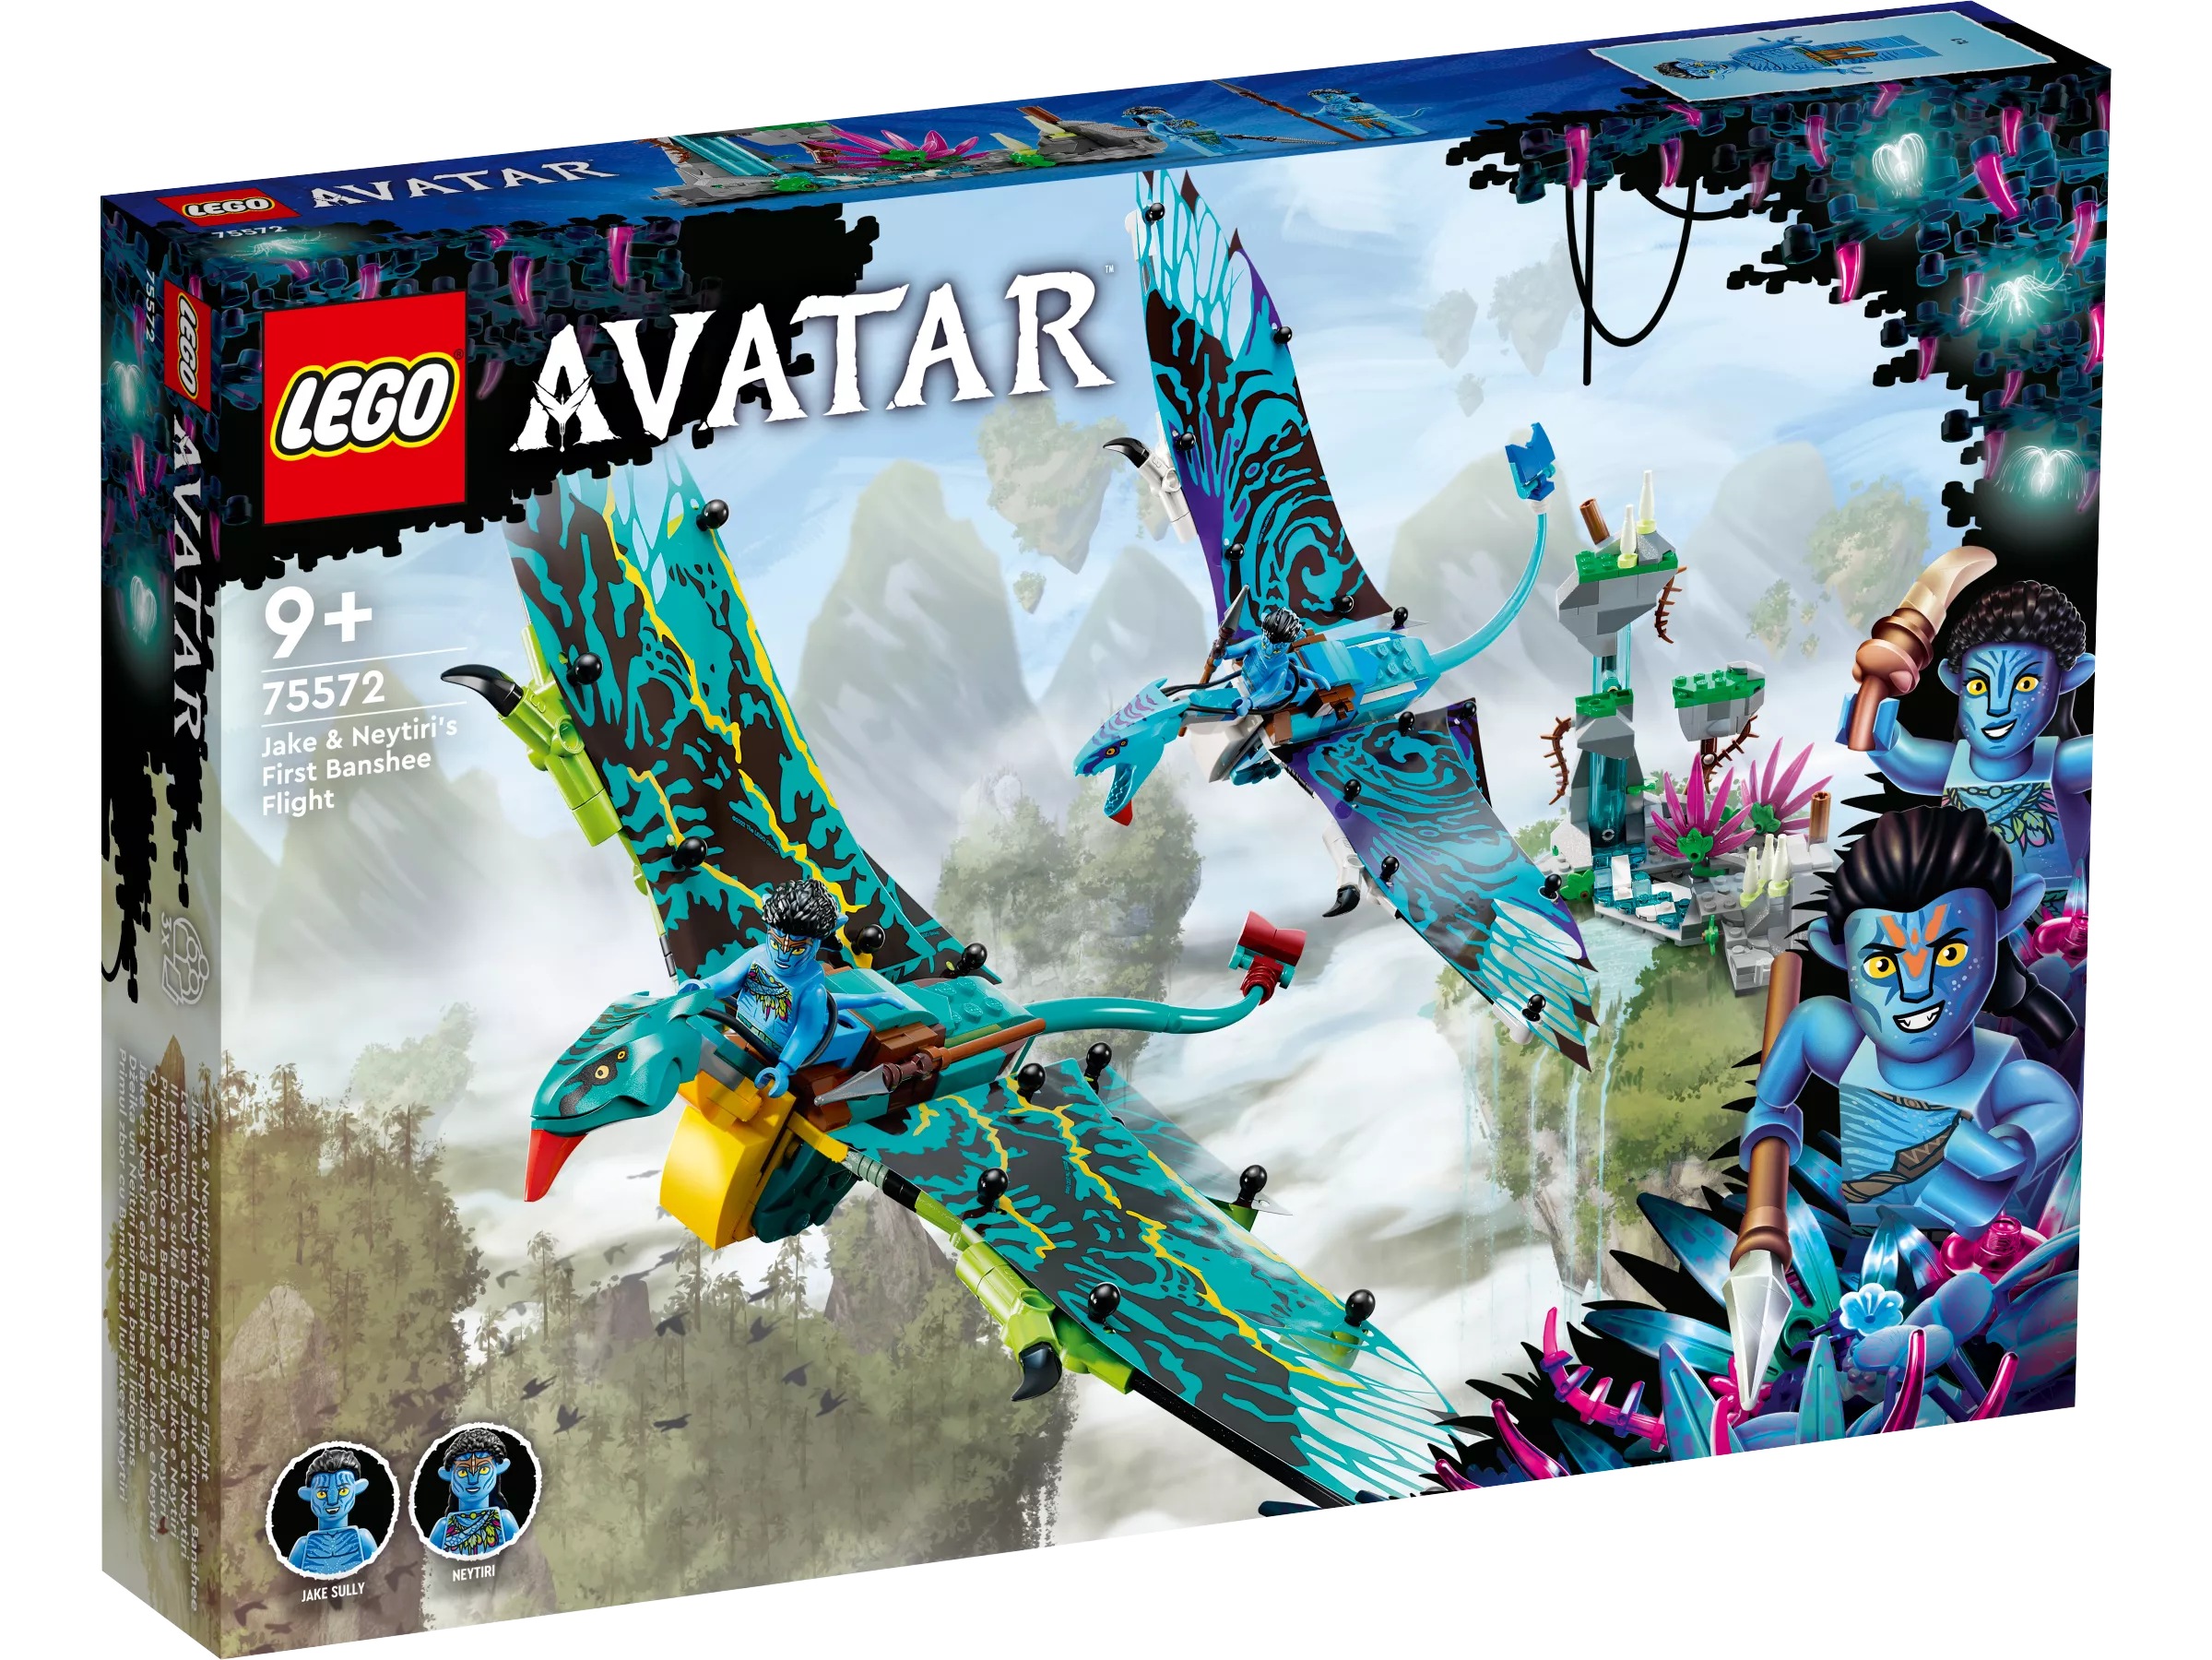 LEGO 75572 Avatar Jakes und Neytiris erster Flug auf einem Banshee